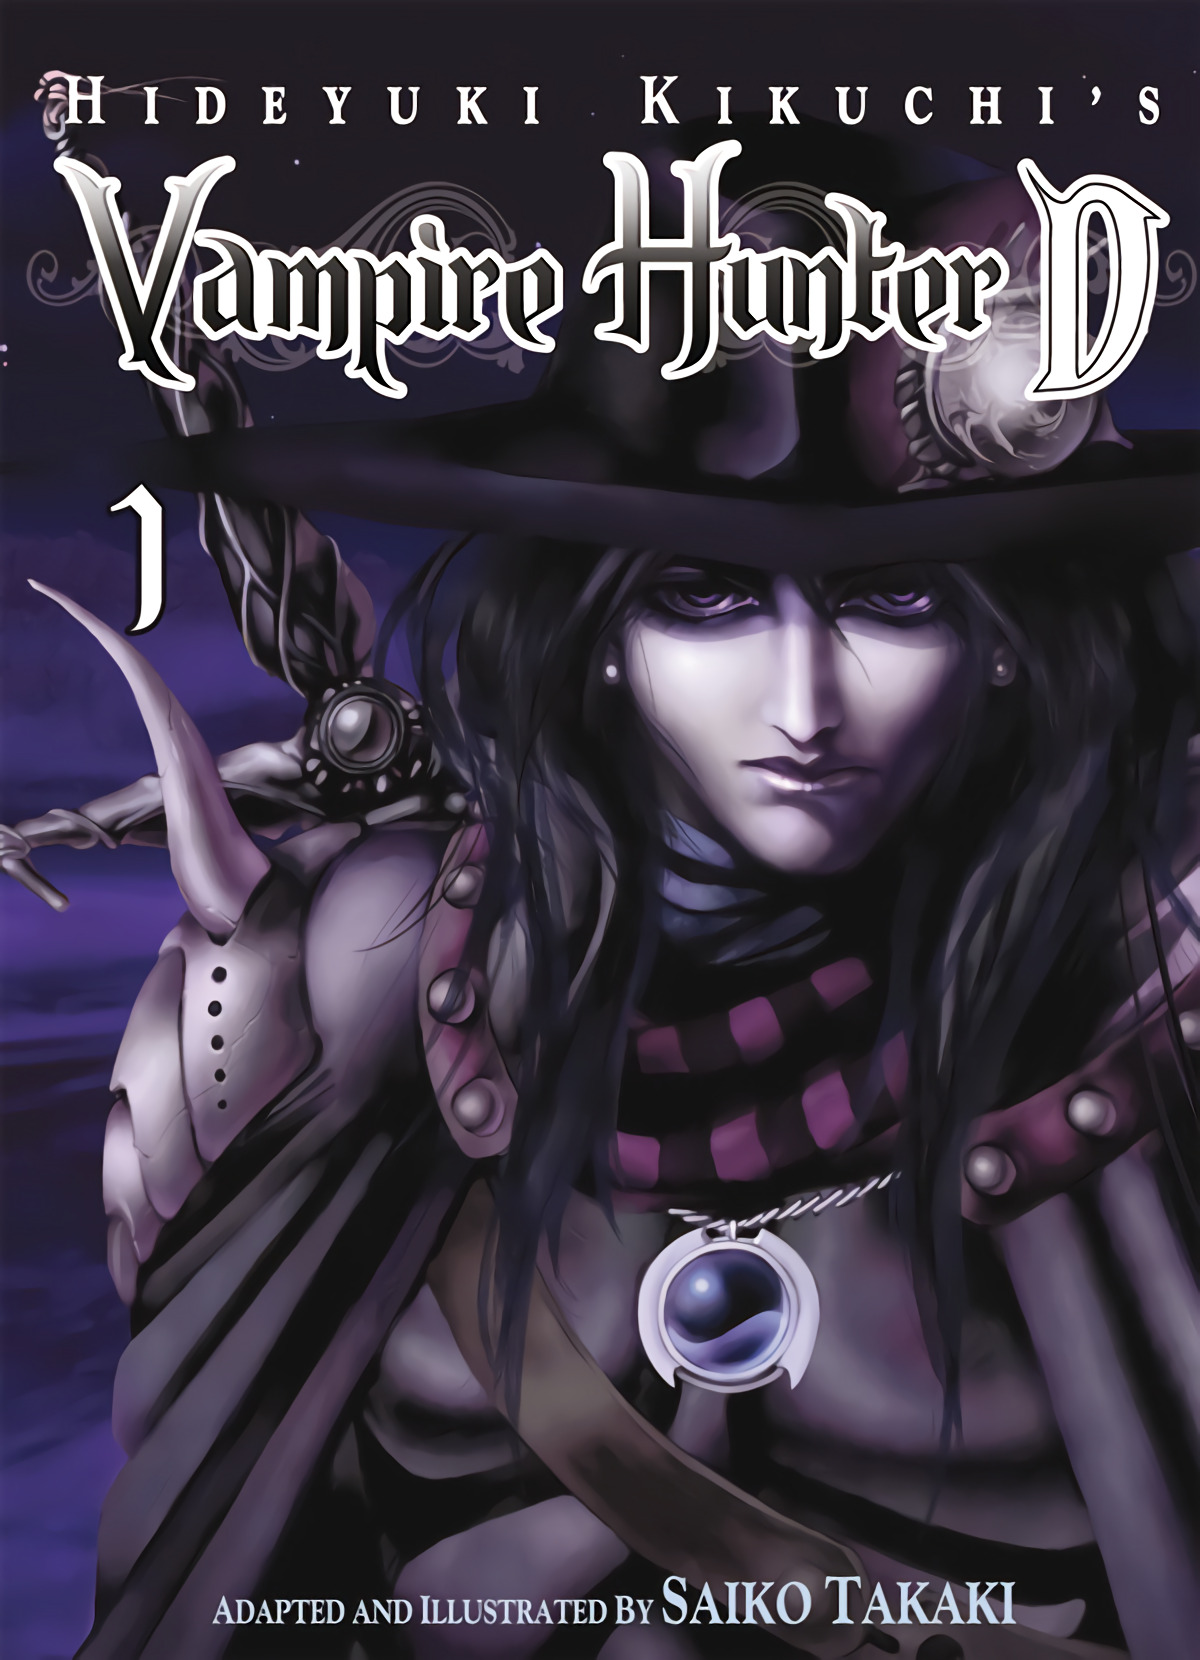 Vampire Hunter, 1 - Kikuchi, Hideyuki